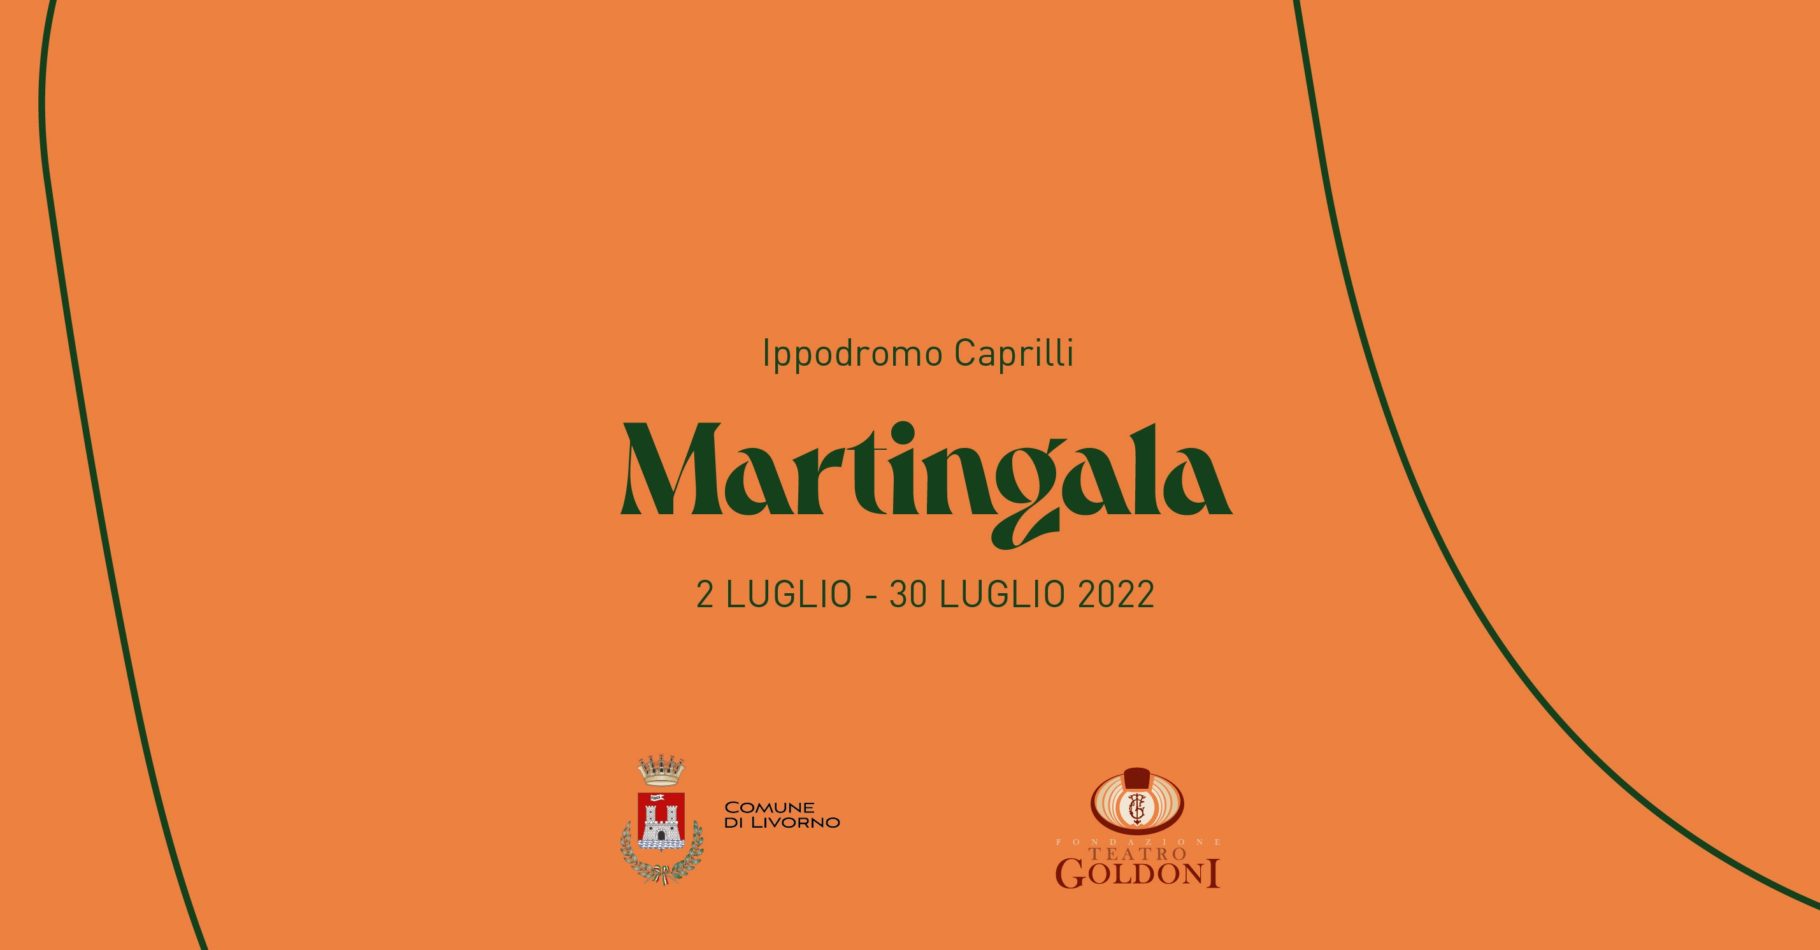 Martingala 2022: “9841 / Rukeli”